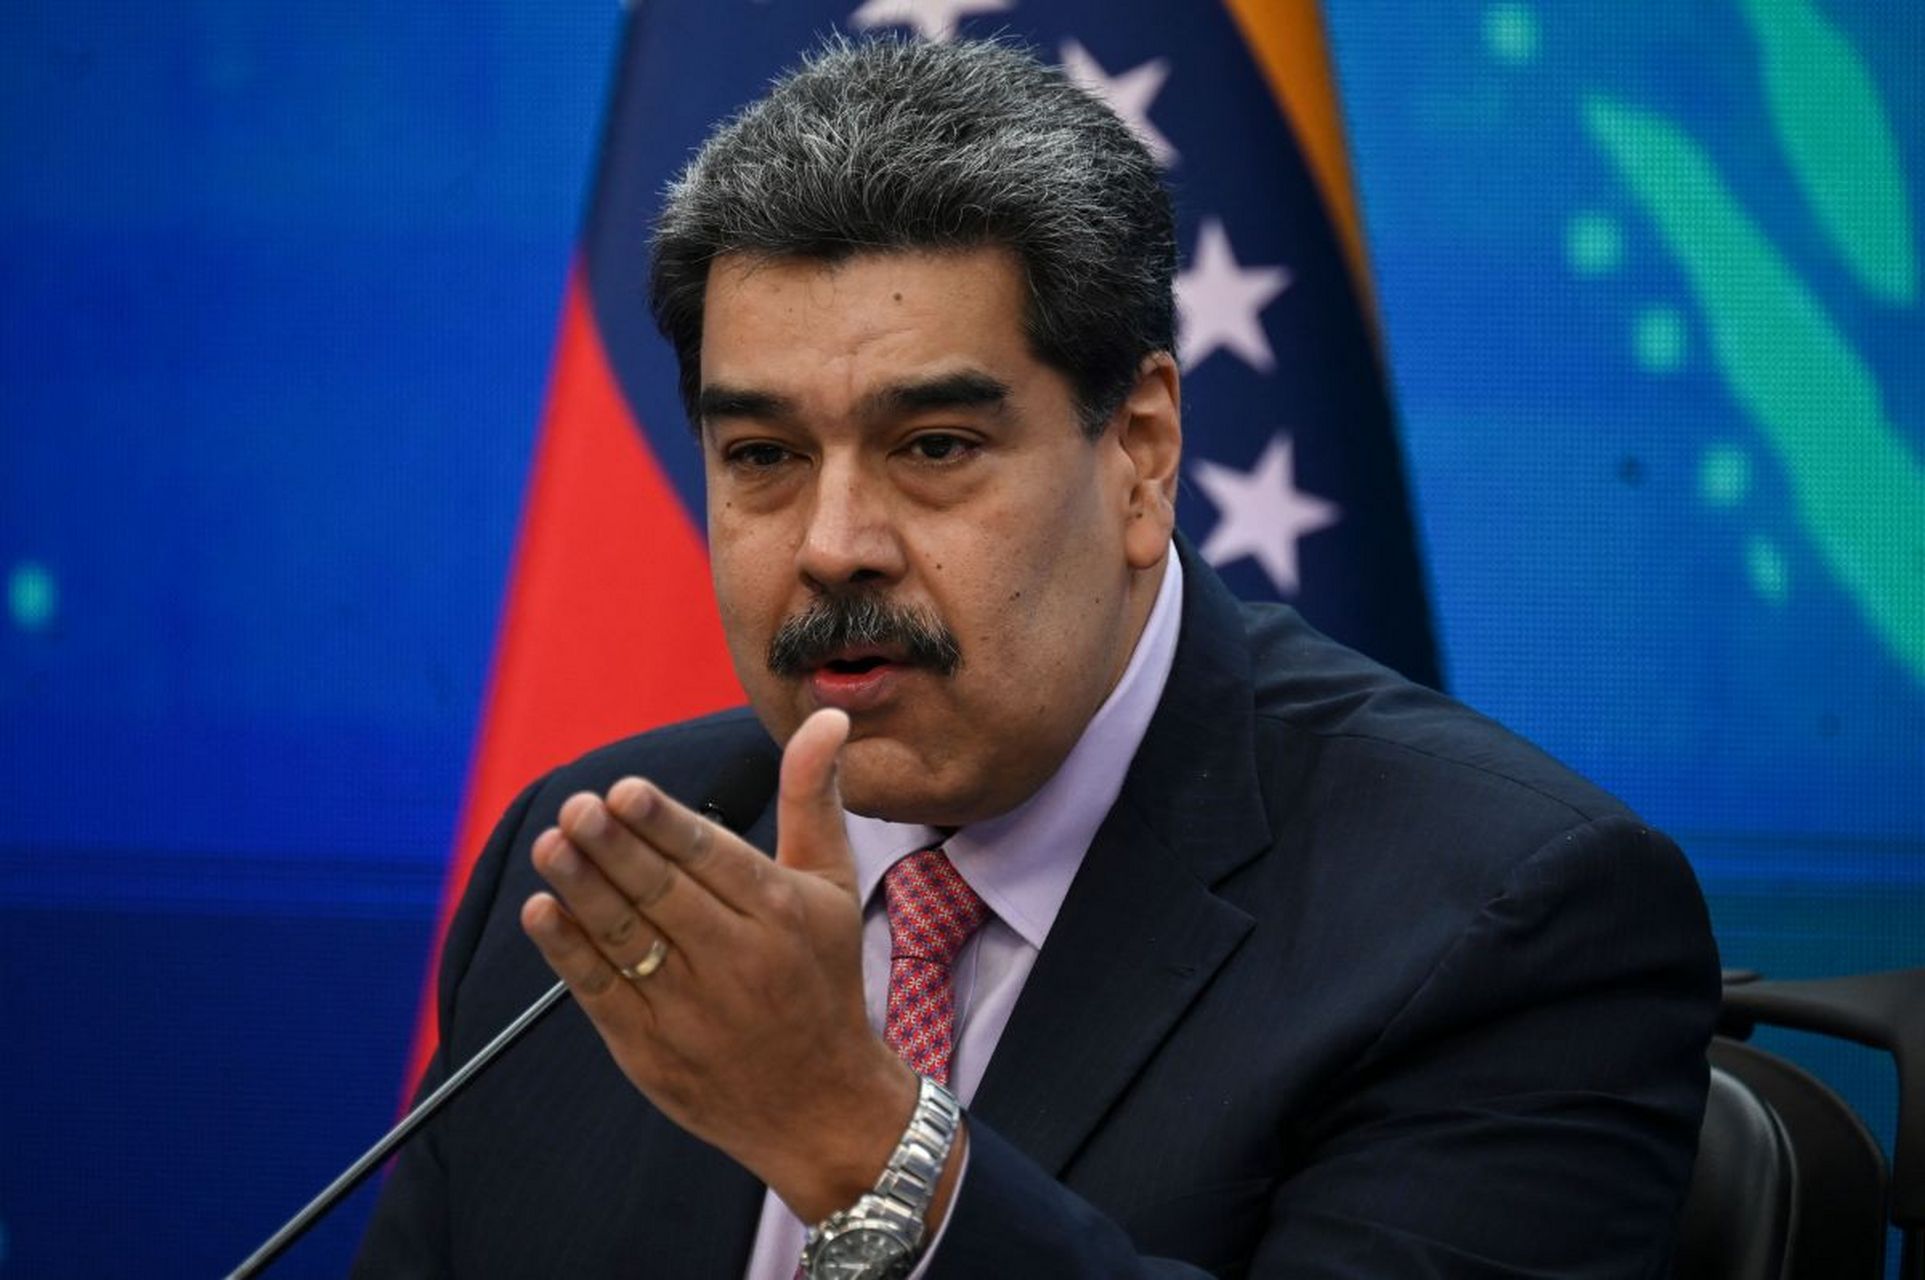 8月31日,反美义士委内瑞拉总统马杜罗突然转向:任何时候都愿意与美国